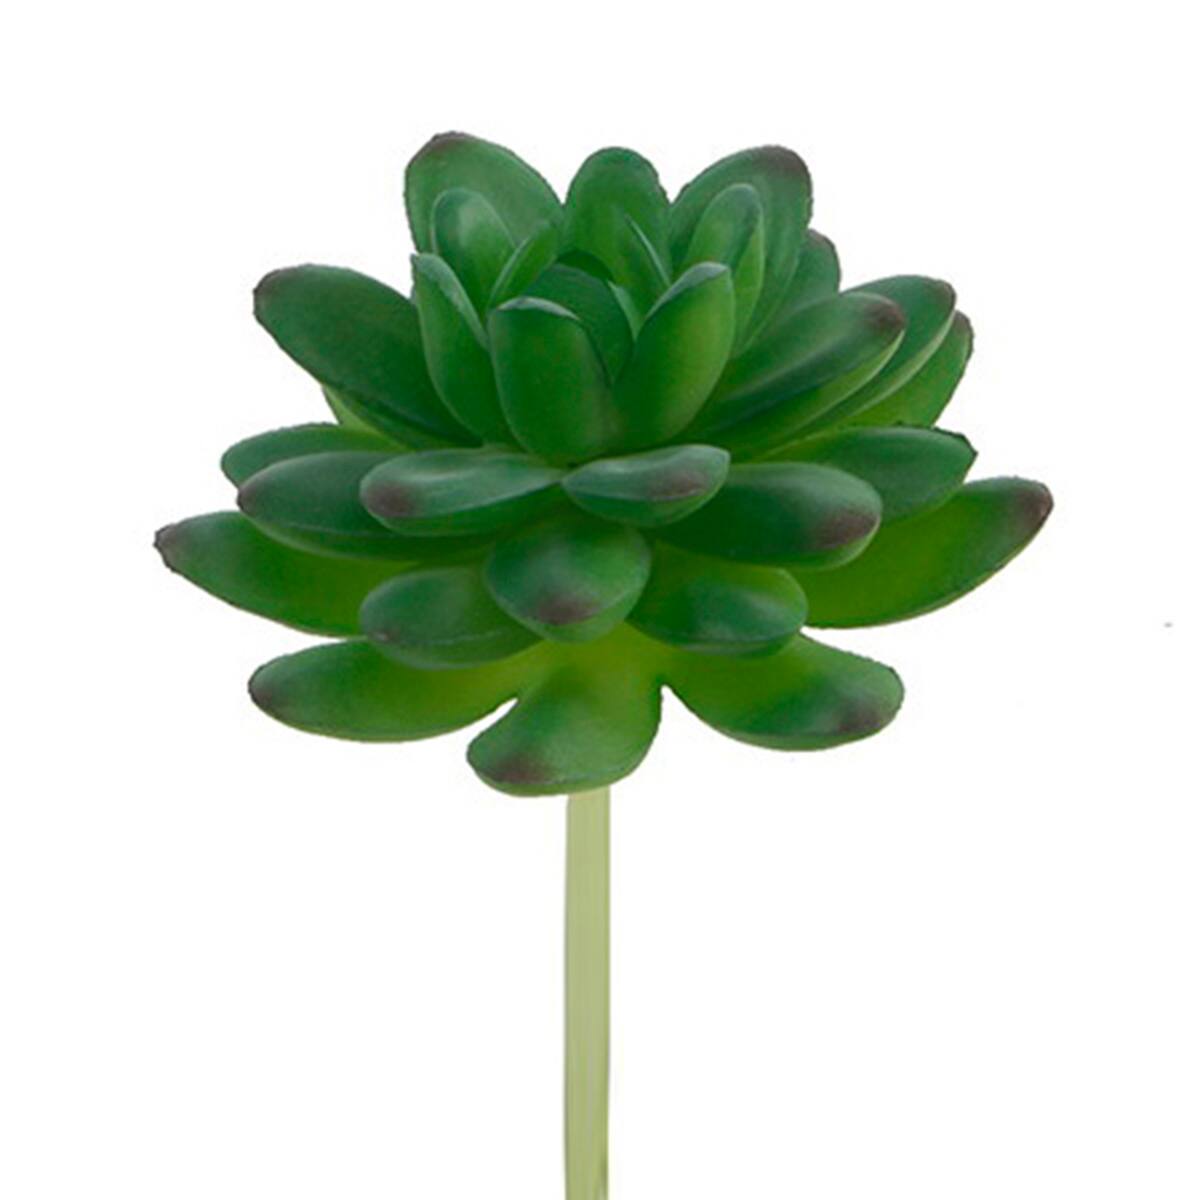 Flora Bunda&#xAE; Stonecrop Succulent Pick, 12ct.